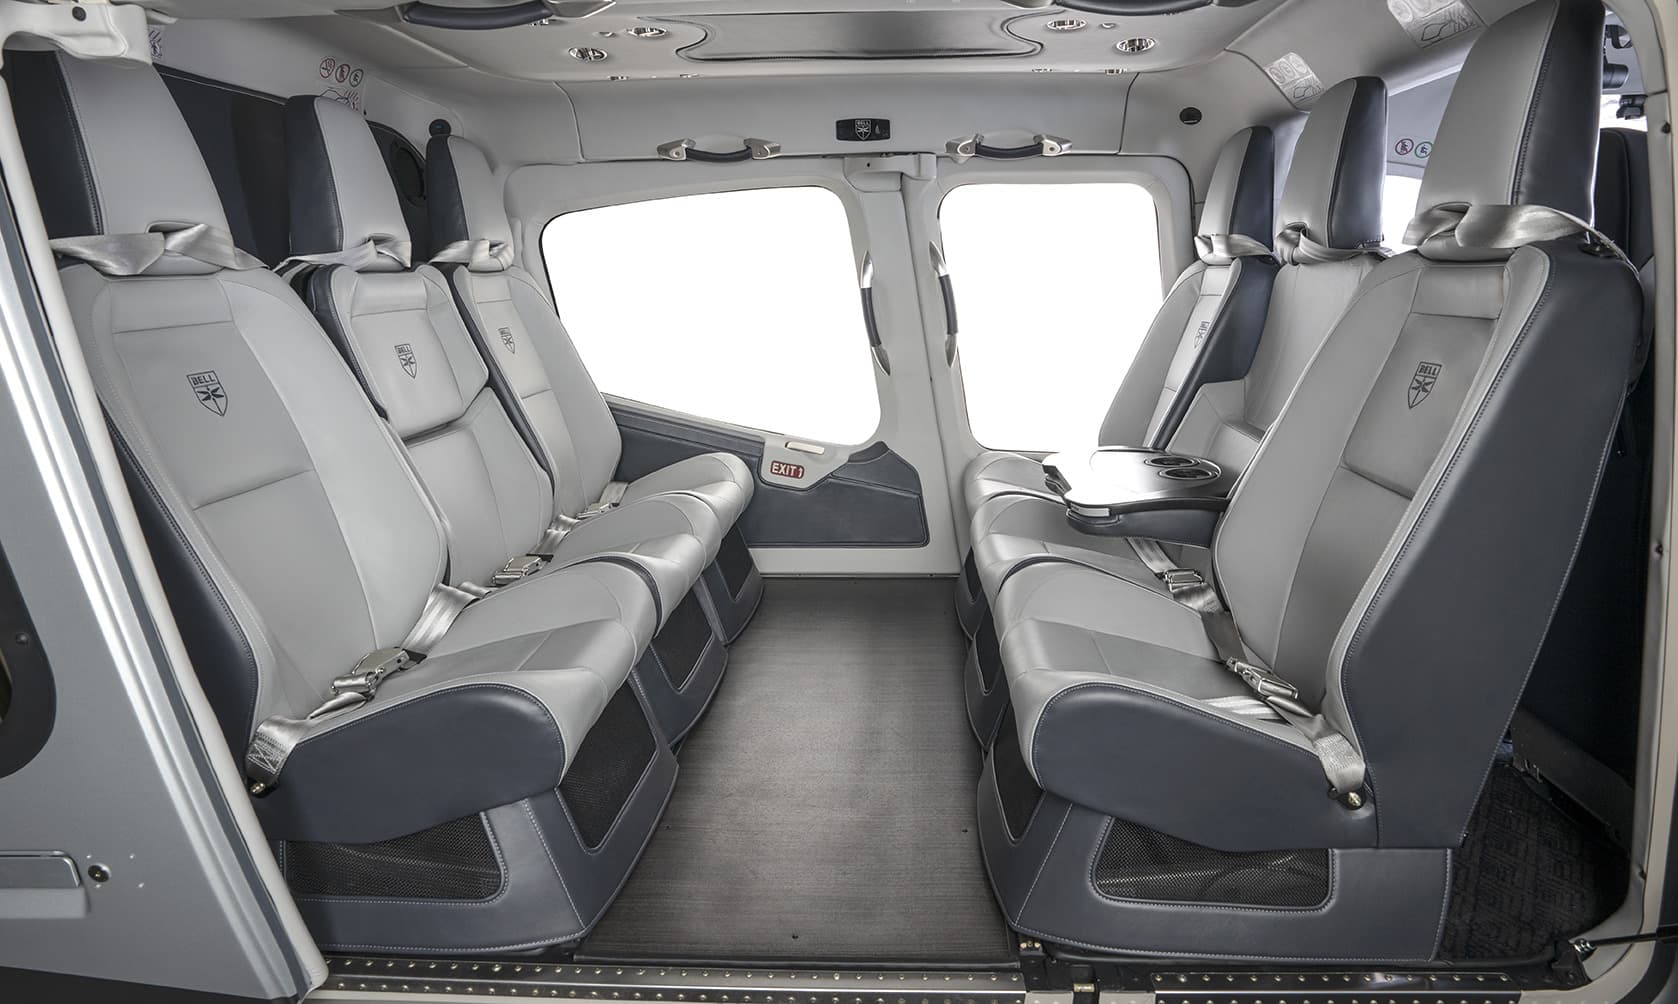 Placeteco propose des pièces d'intérieur d'hélicoptères hautement conçues, offrant confort, sécurité et esthétique pour une expérience de vol exceptionnelle.